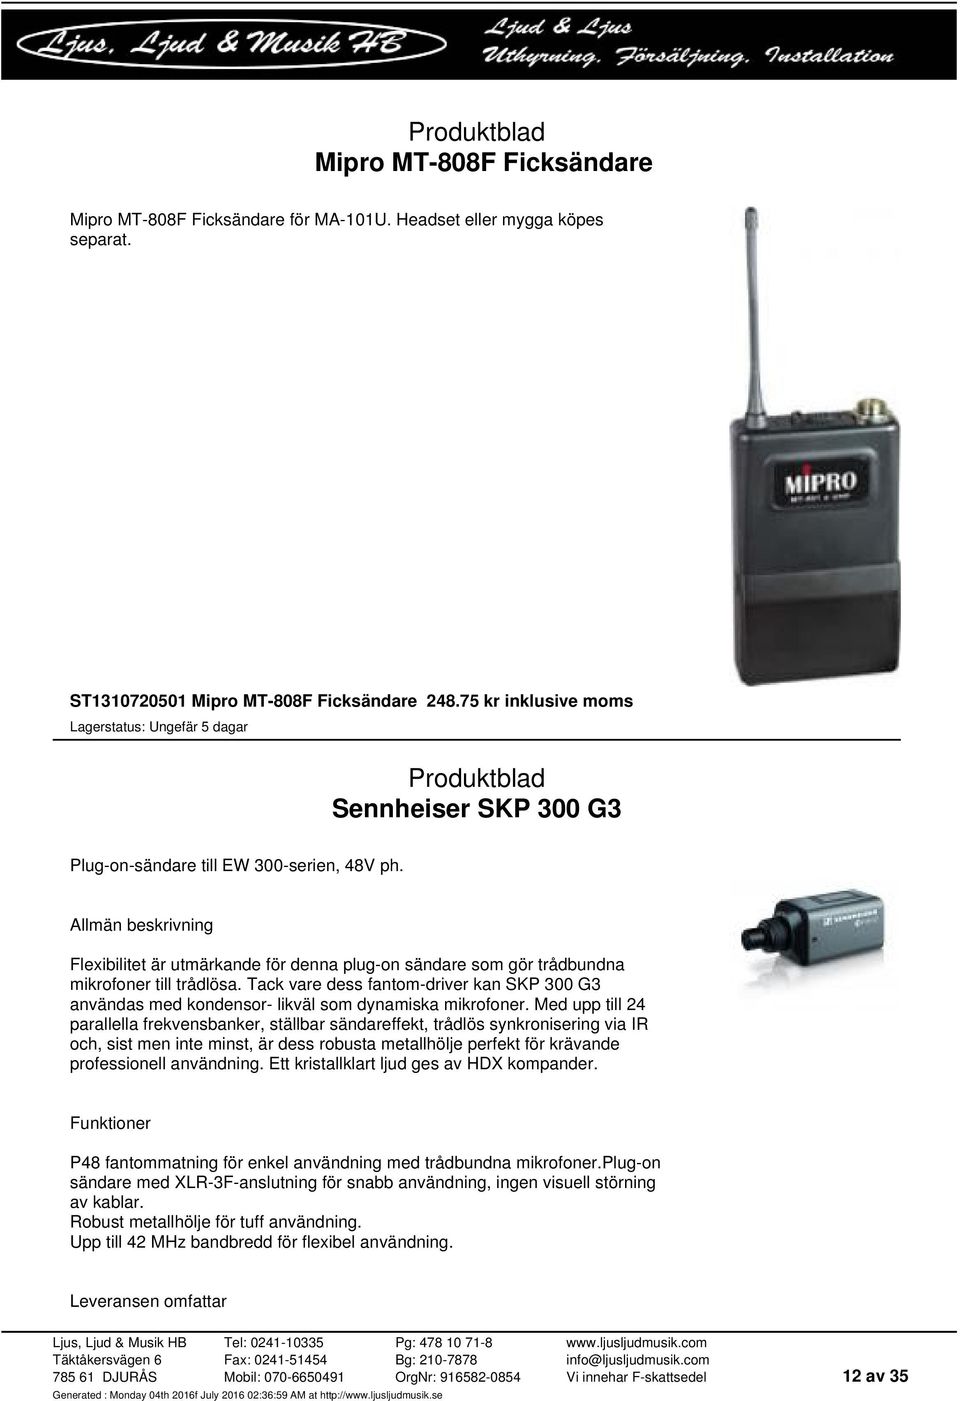 Tack vare dess fantom-driver kan SKP 300 G3 användas med kondensor- likväl som dynamiska mikrofoner.